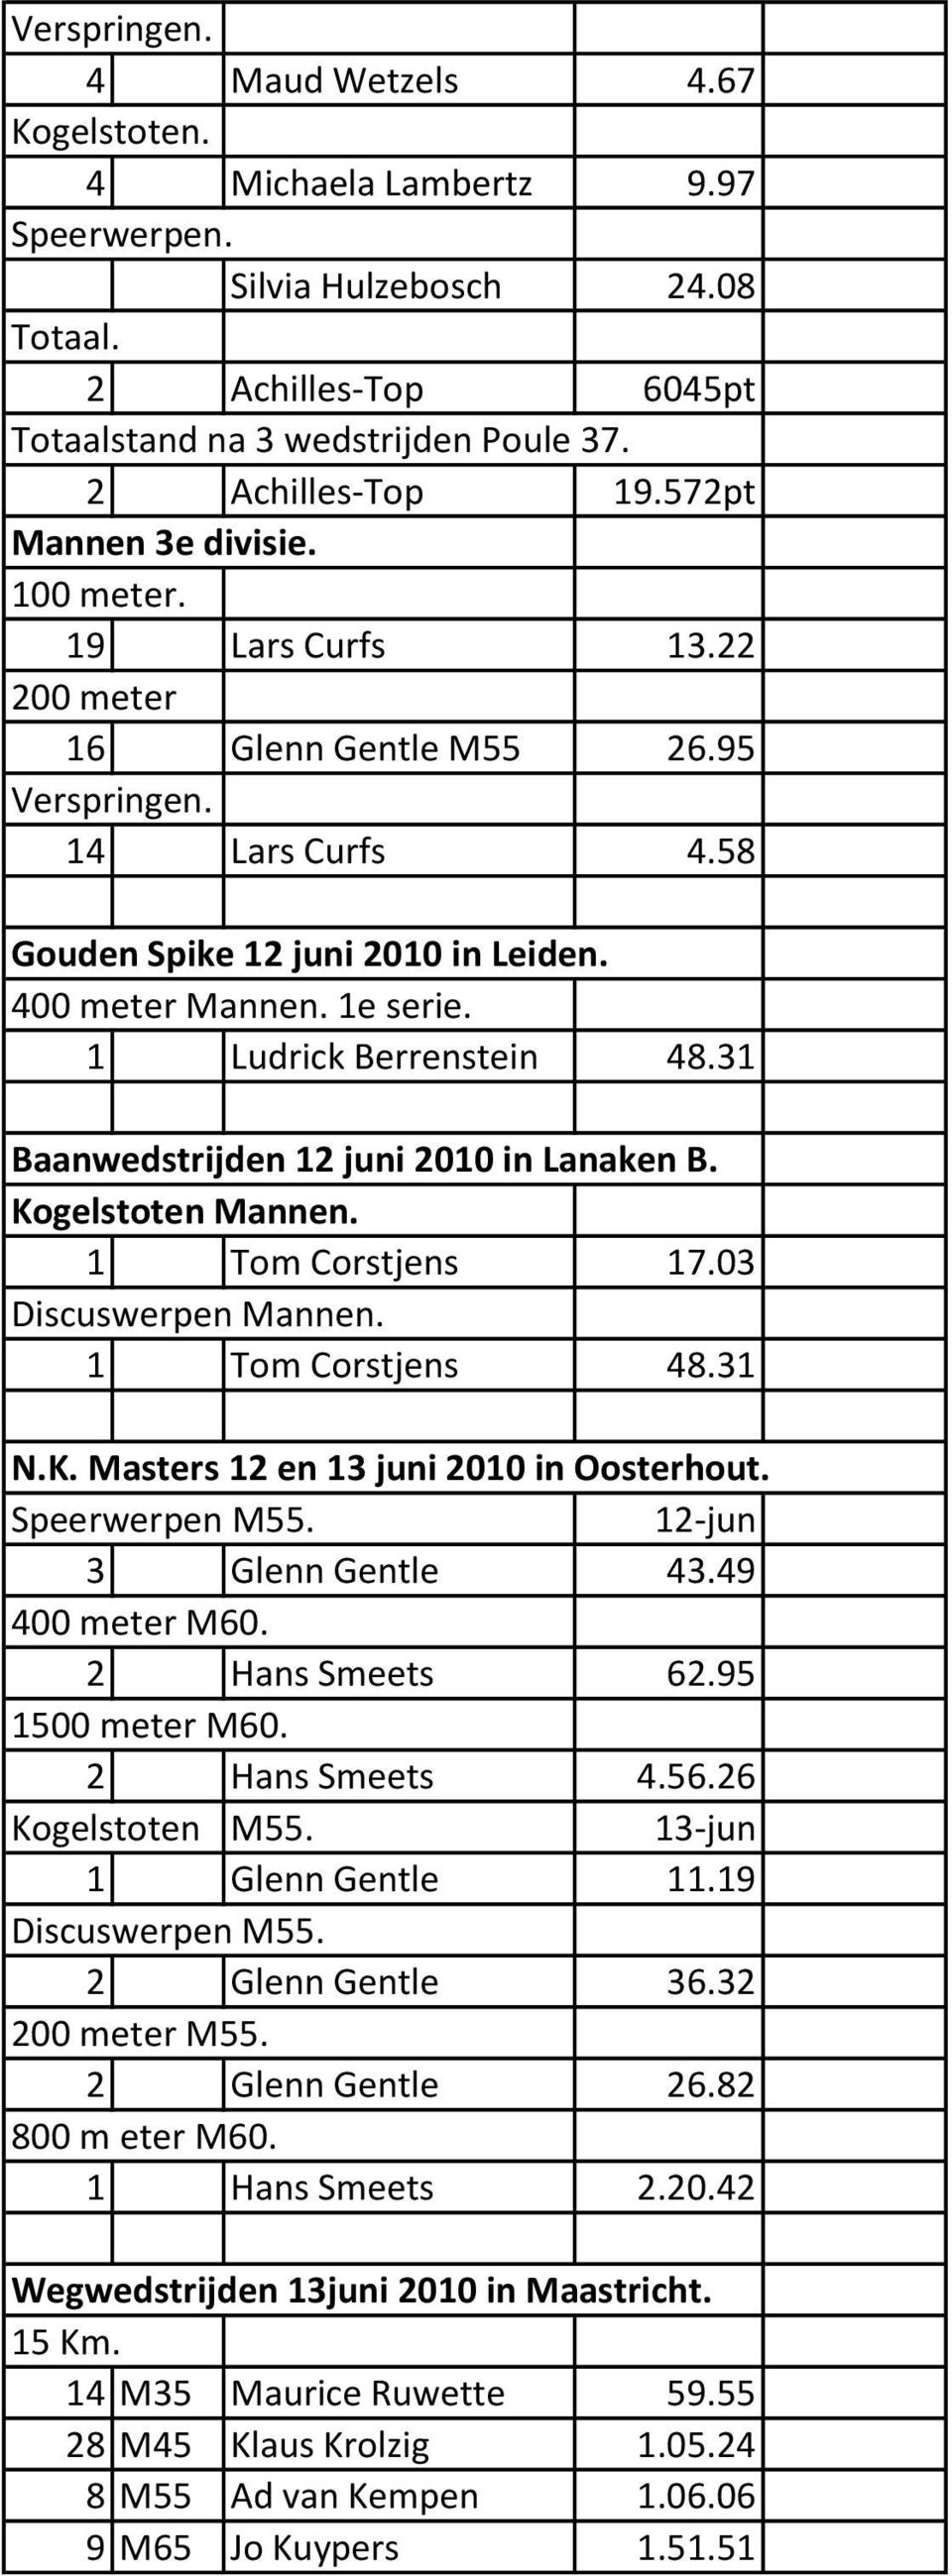 1 Ludrick Berrenstein 48.31 Baanwedstrijden 12 juni 2010 in Lanaken B. Kogelstoten Mannen. 1 Tom Corstjens 17.03 Discuswerpen Mannen. 1 Tom Corstjens 48.31 N.K. Masters 12 en 13 juni 2010 in Oosterhout.